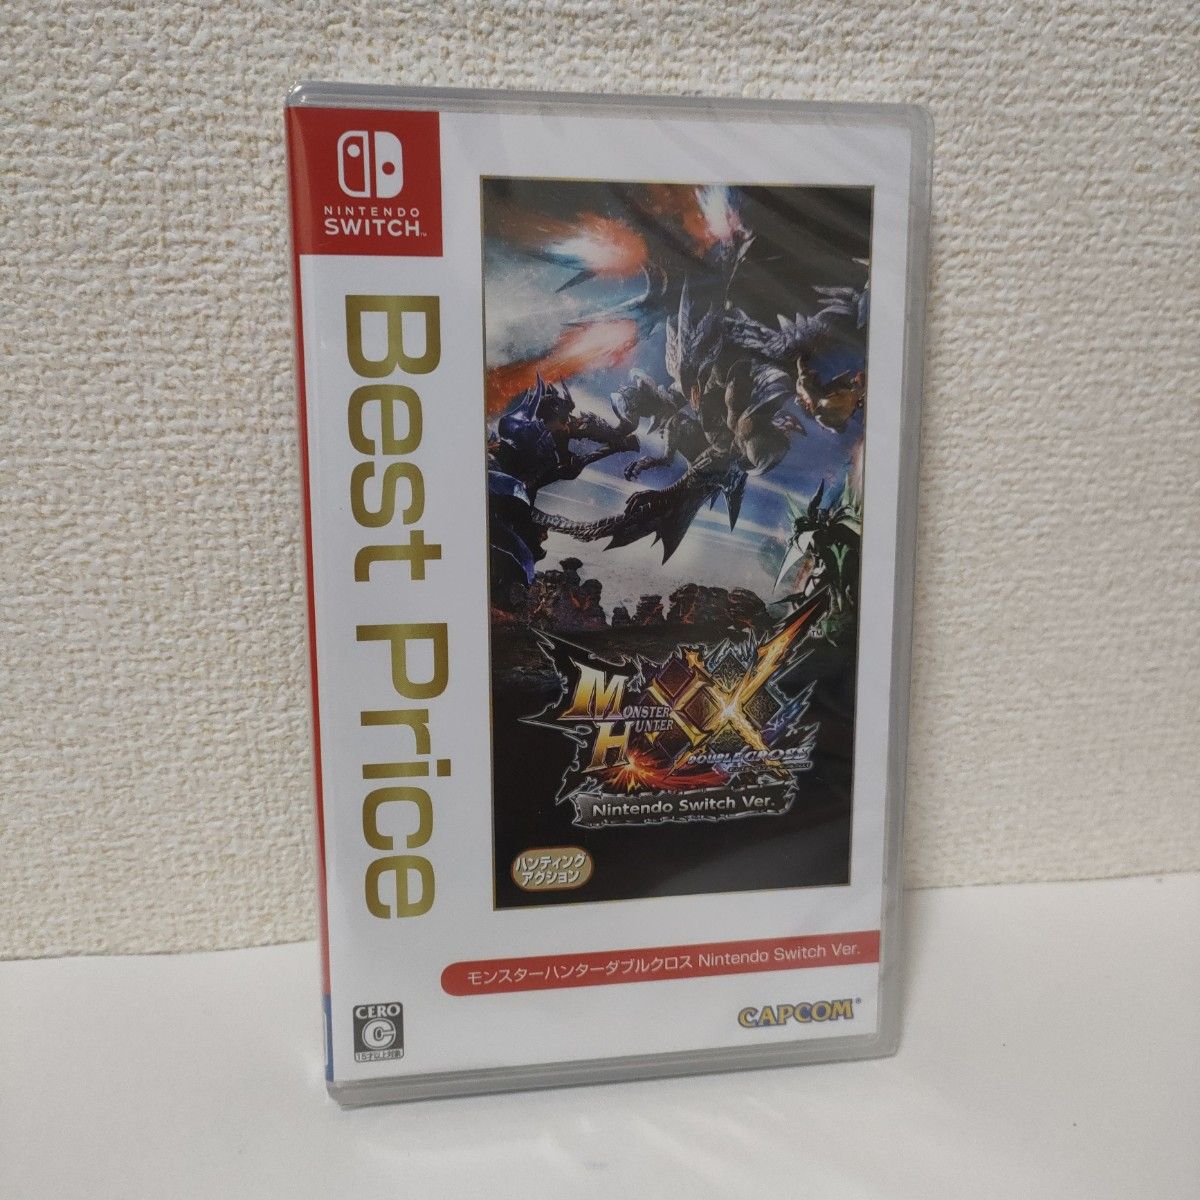 ［新品・未開封］ モンスターハンターダブルクロス Nintendo Switch Ver. Best Price